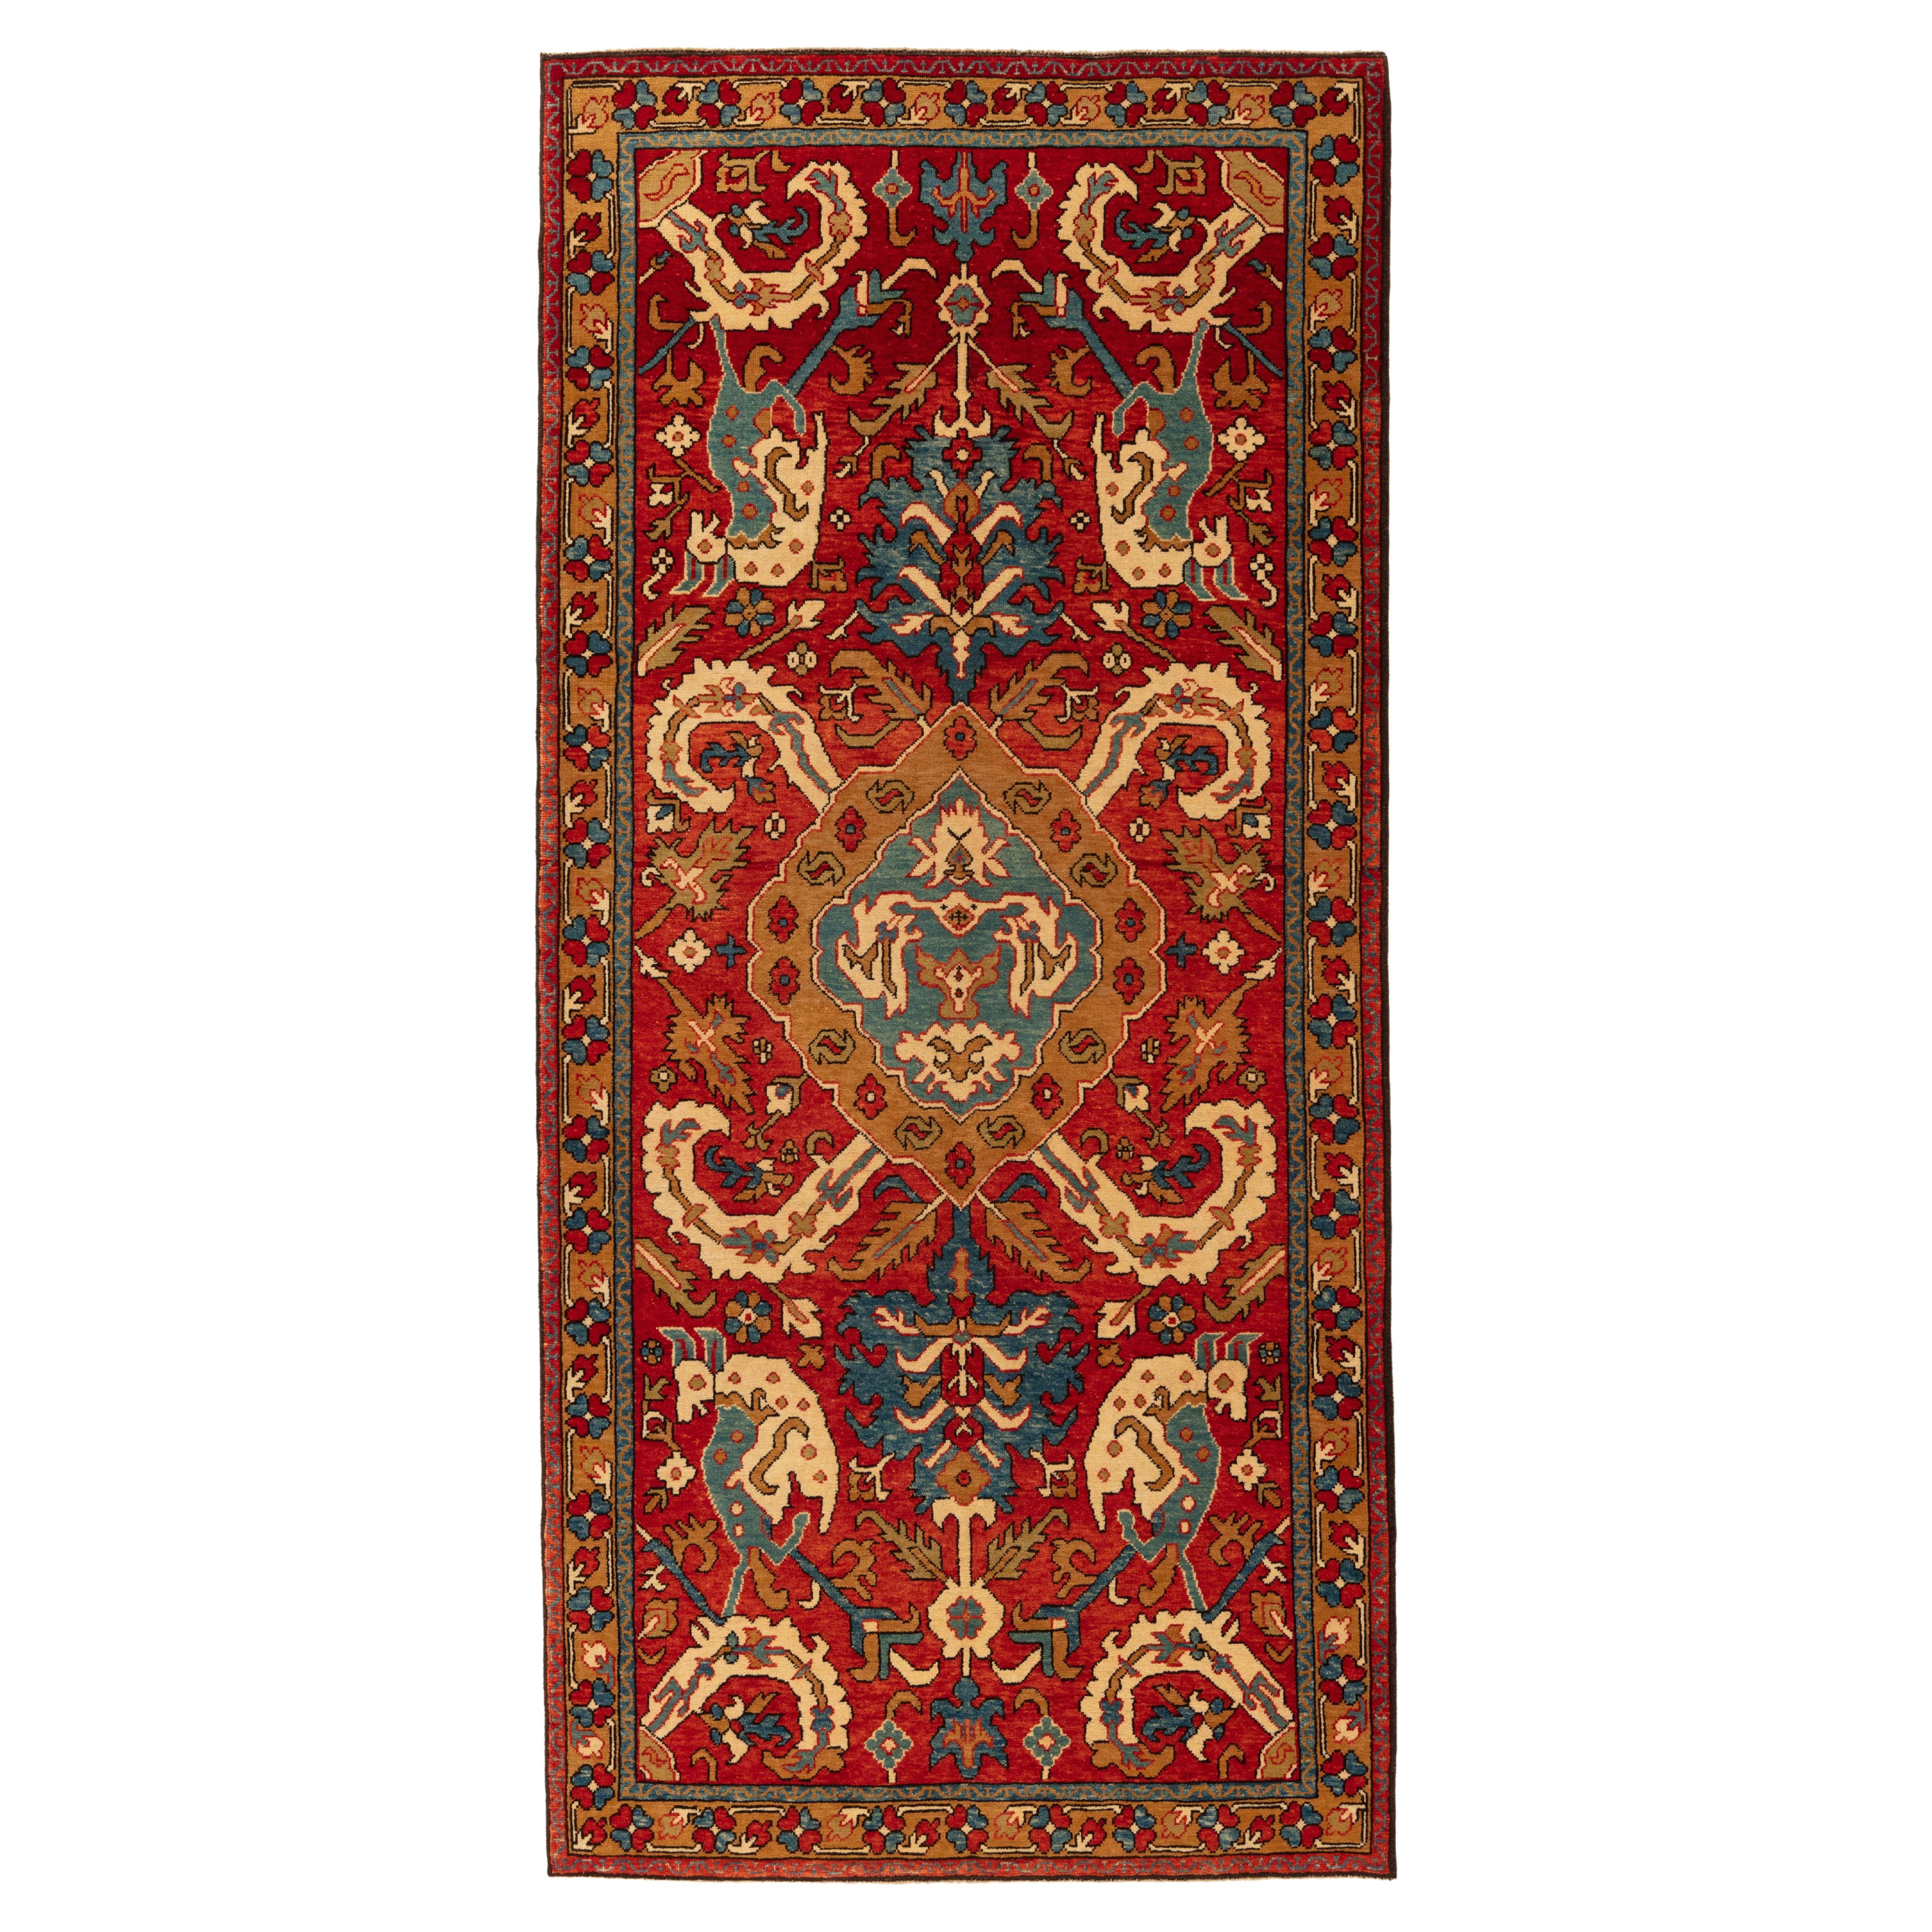 Ararat-Teppich, Drachenteppich, antiker kaukasischer Revival-Teppich, natürlich gefärbt